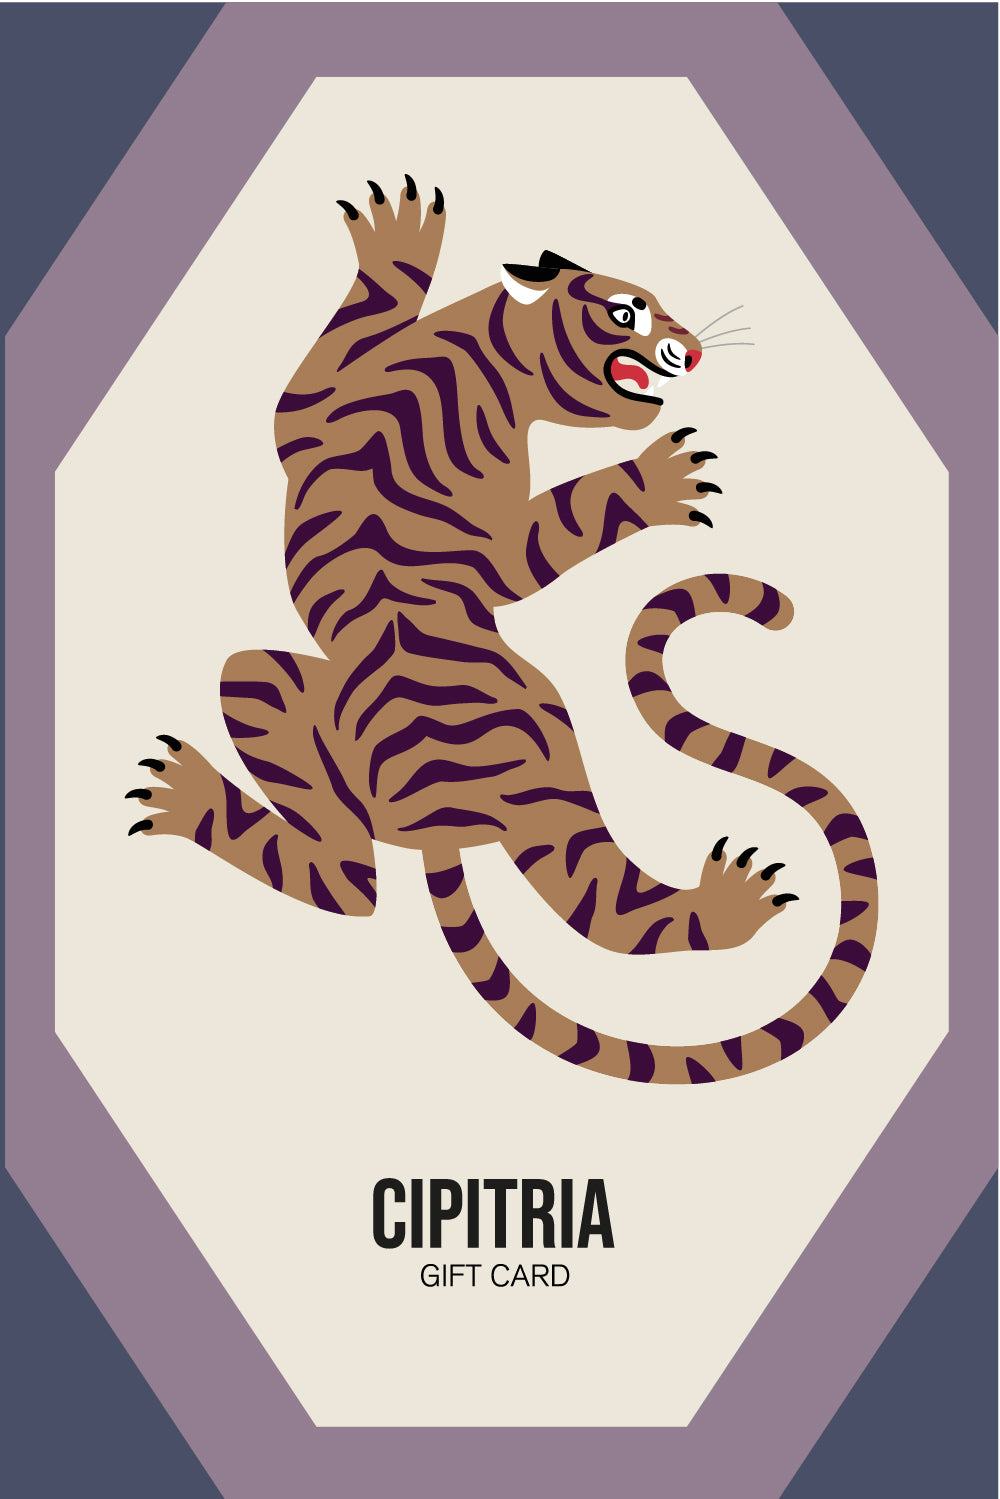 CIPITRIA GIFT